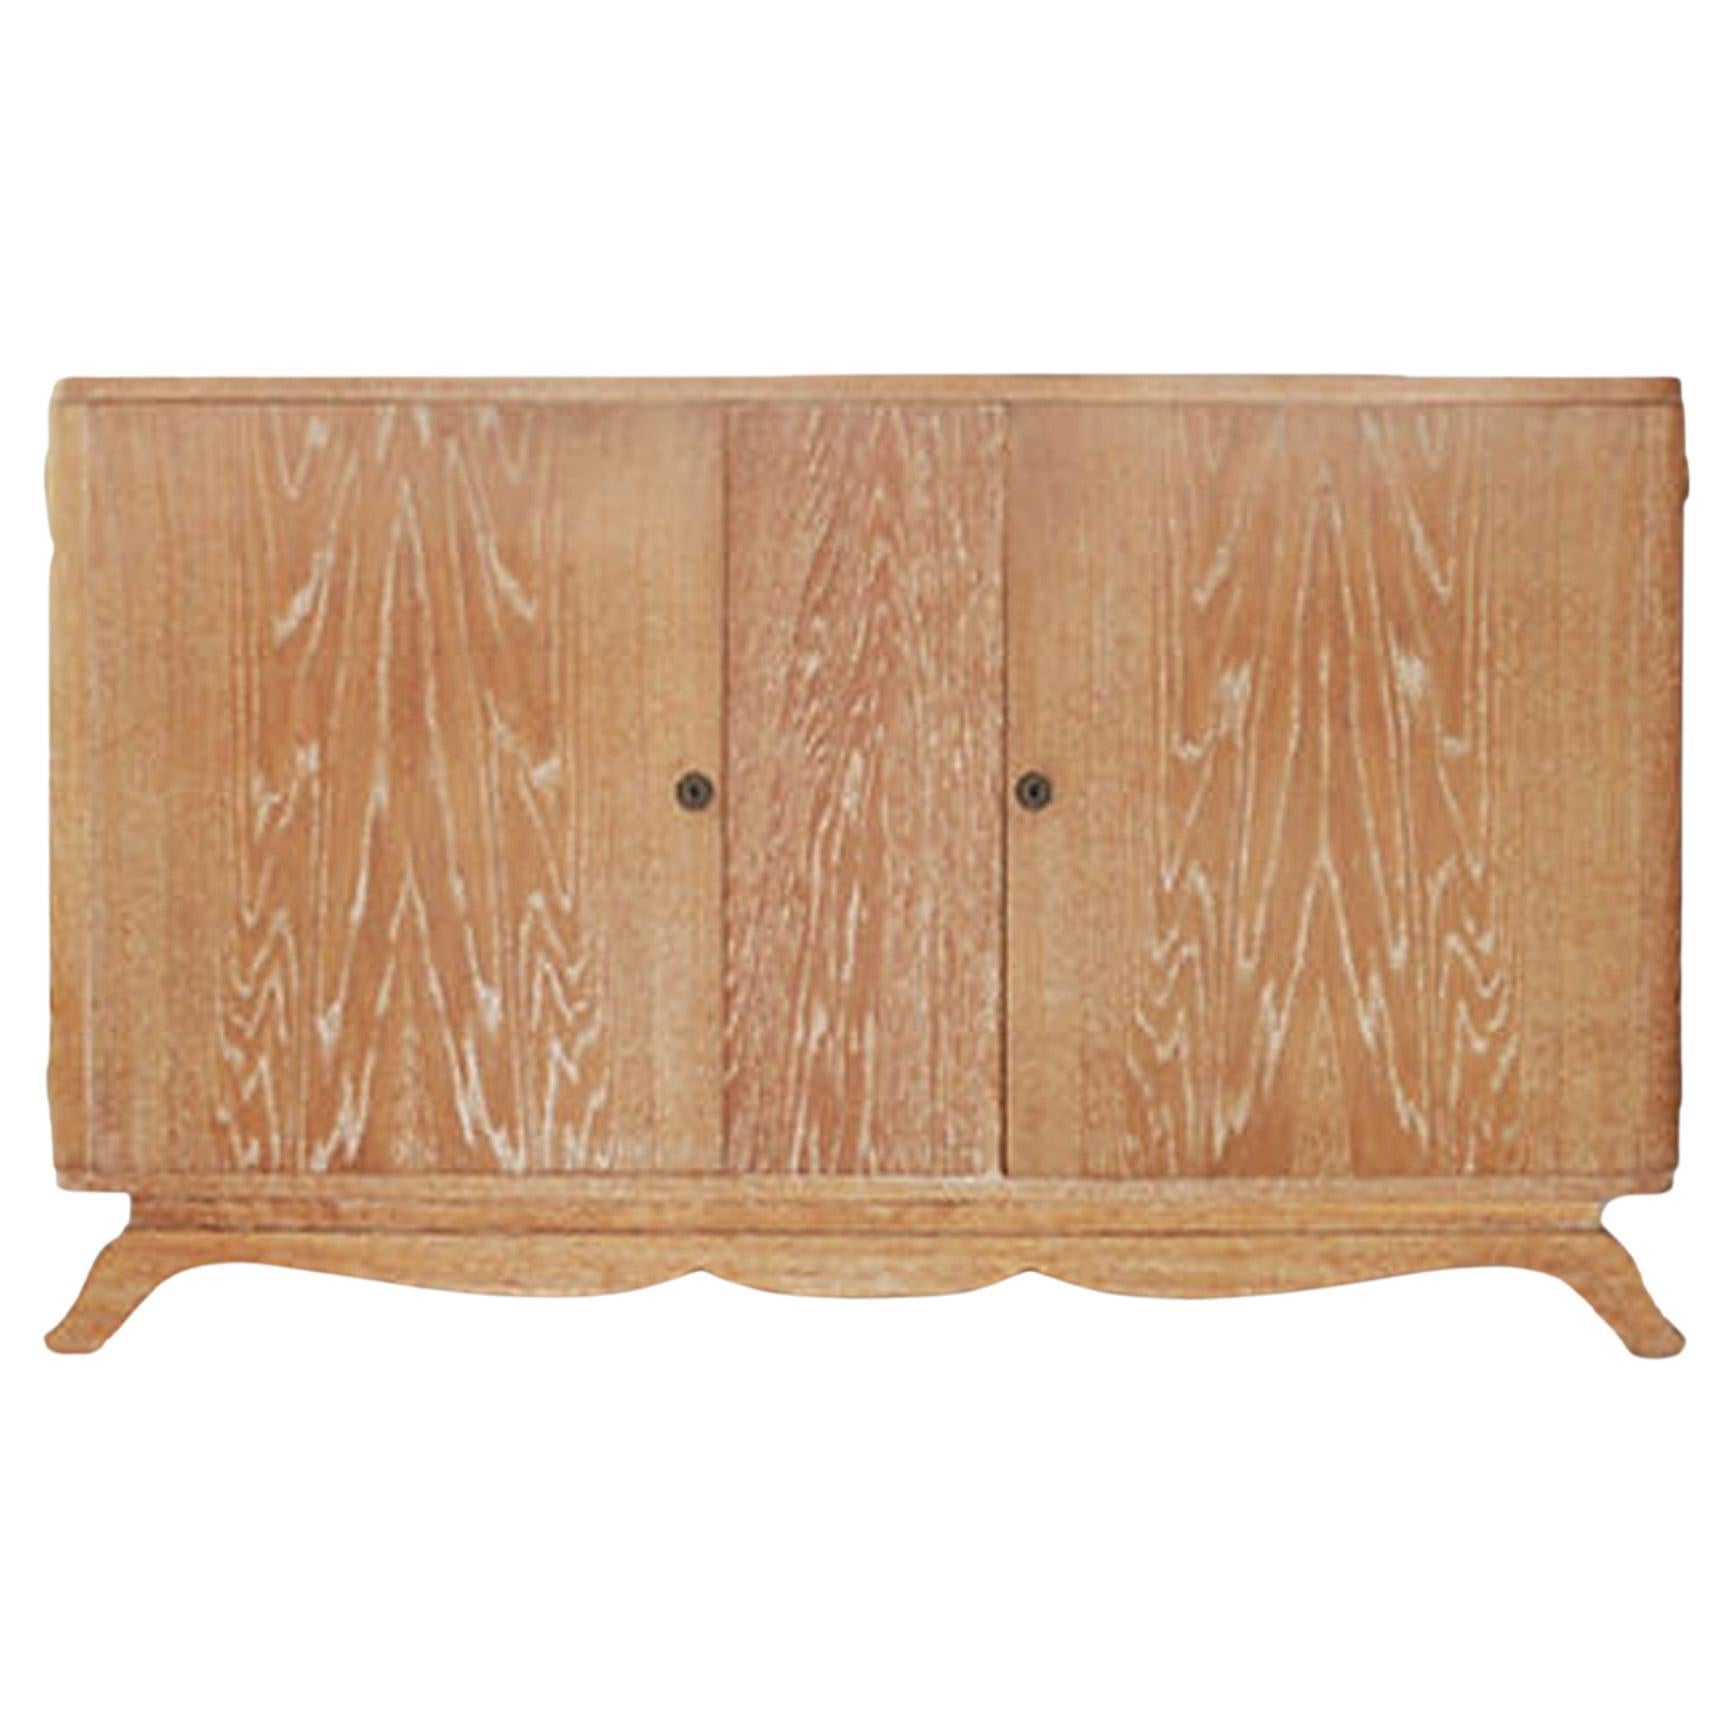 Cersused Oak Cabinet / Sideboard, France, c. 1940